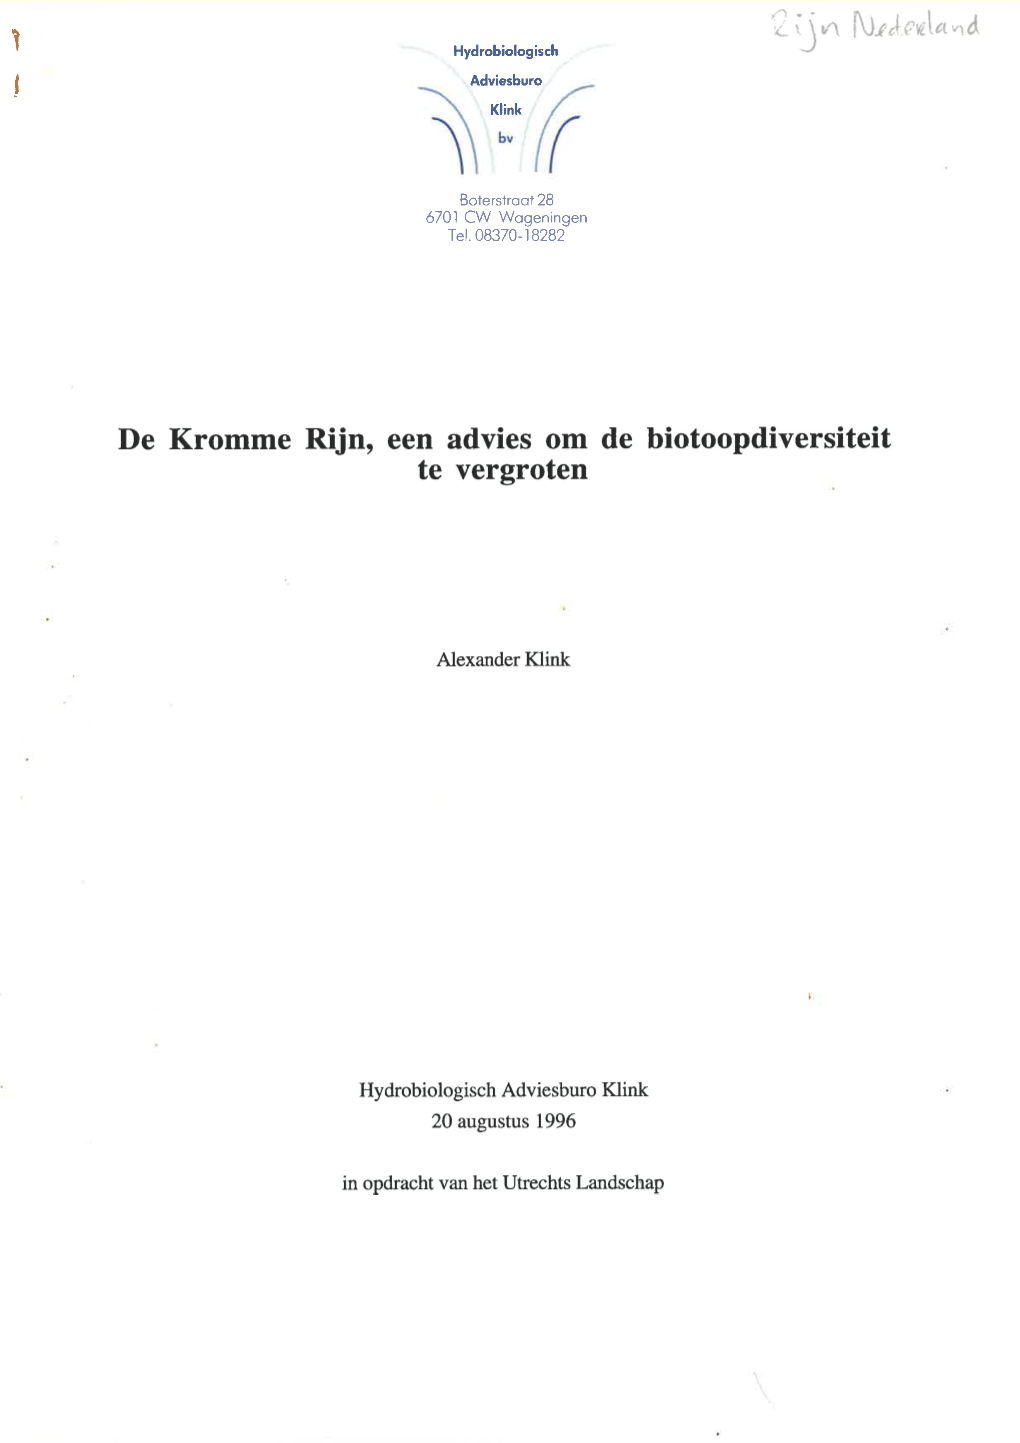 Klink, A., 1996 De Kromme Rijn, Een Advies Om De Biotoopdiversiteit Te